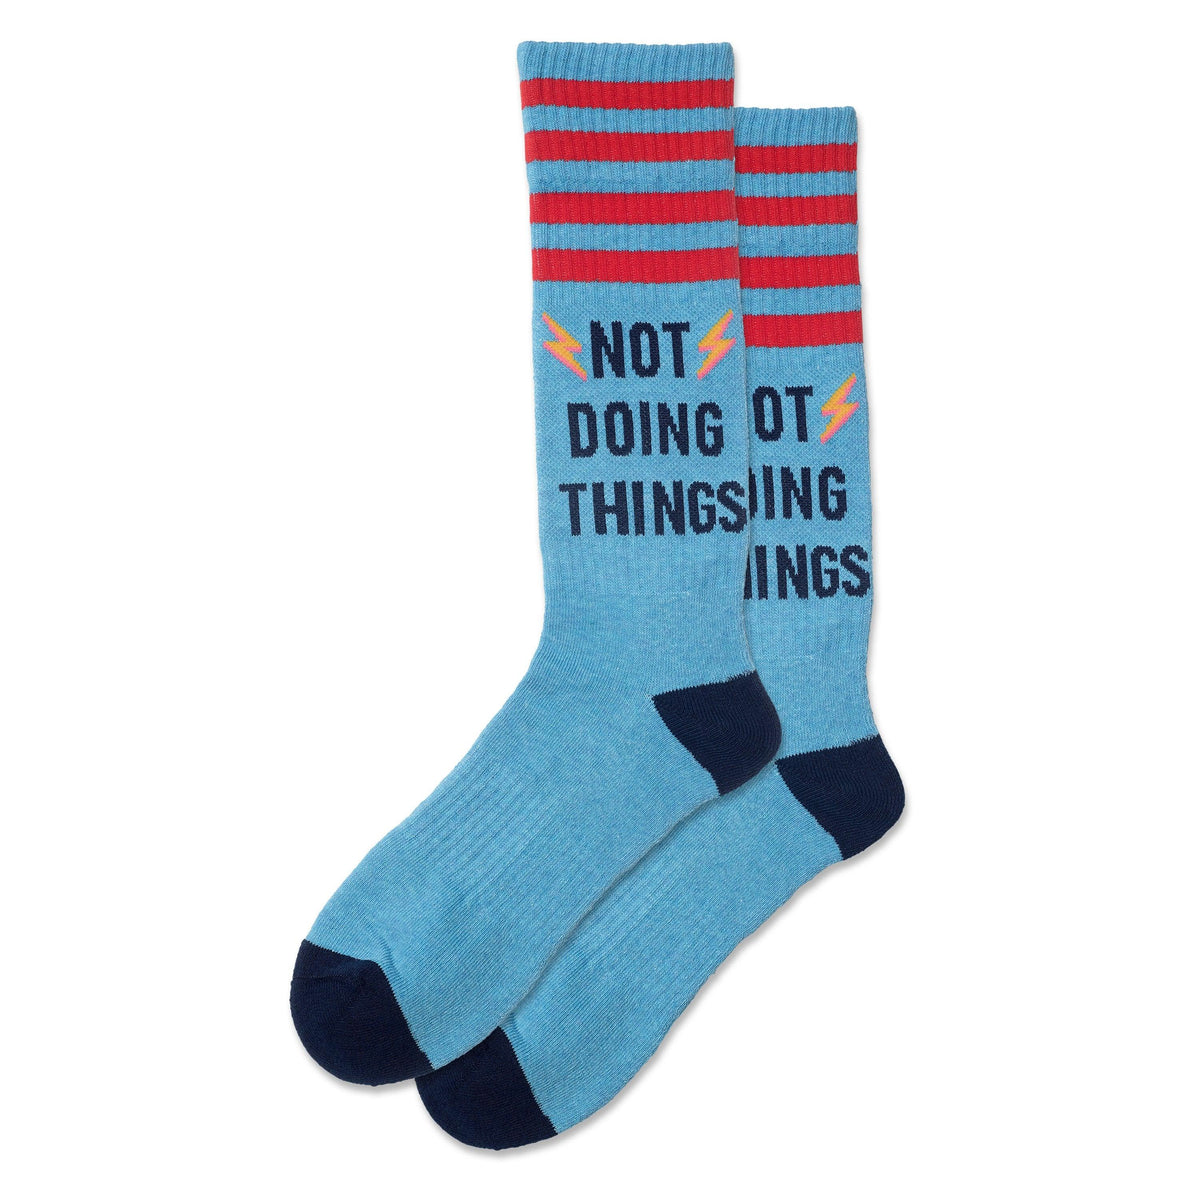 Mens Socks Not Doing Things Blue